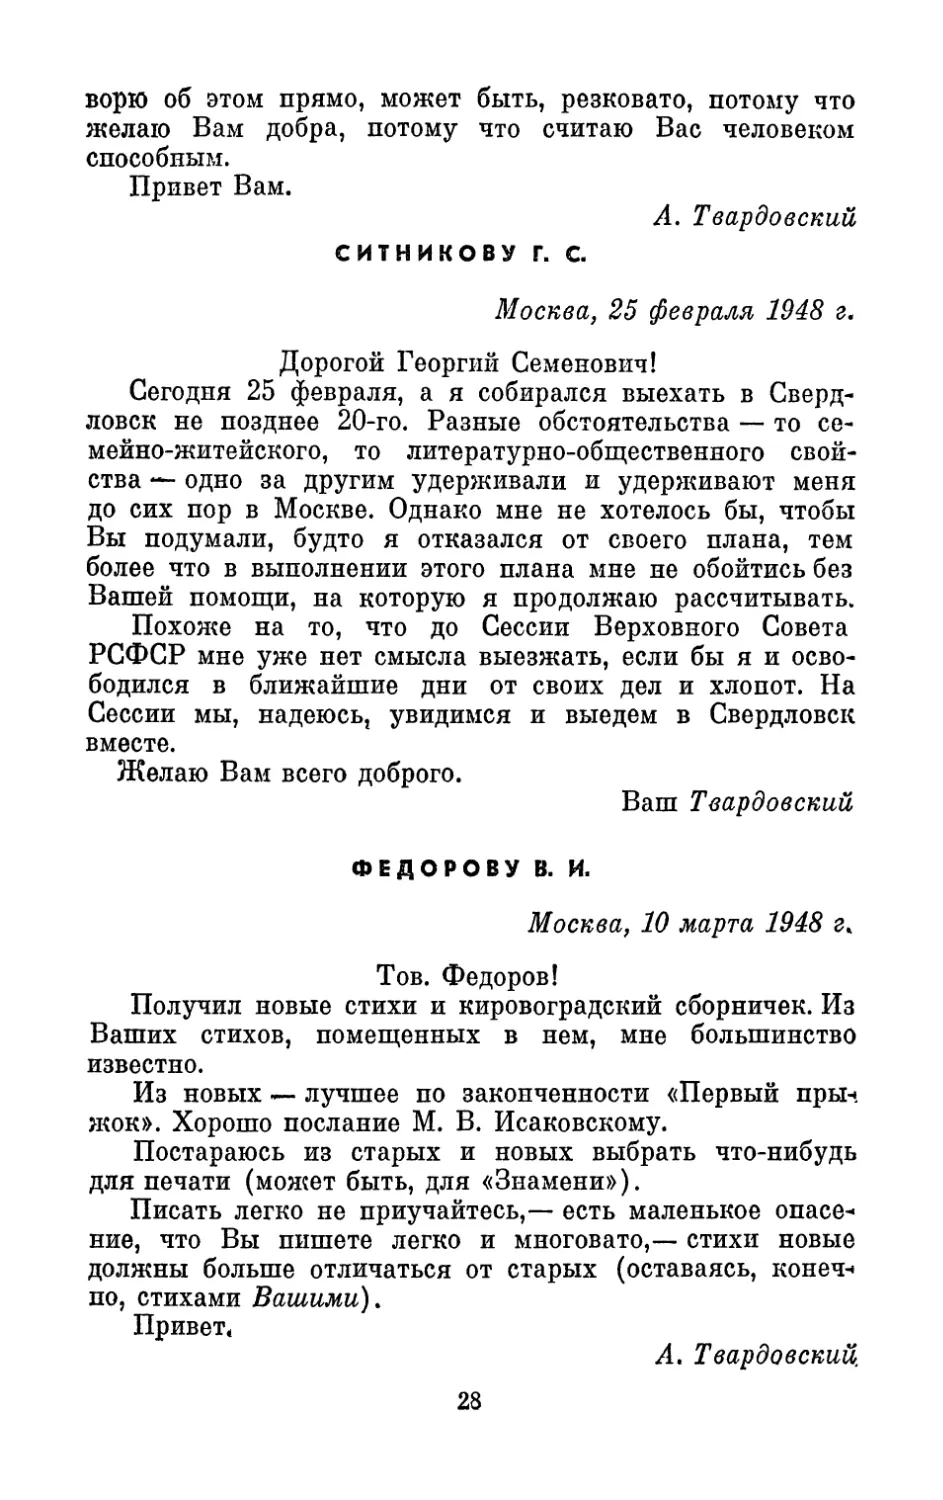 Ситникову Г. С., 25 февраля 1948 г.
Федорову В. И., 10 марта 1948 г.